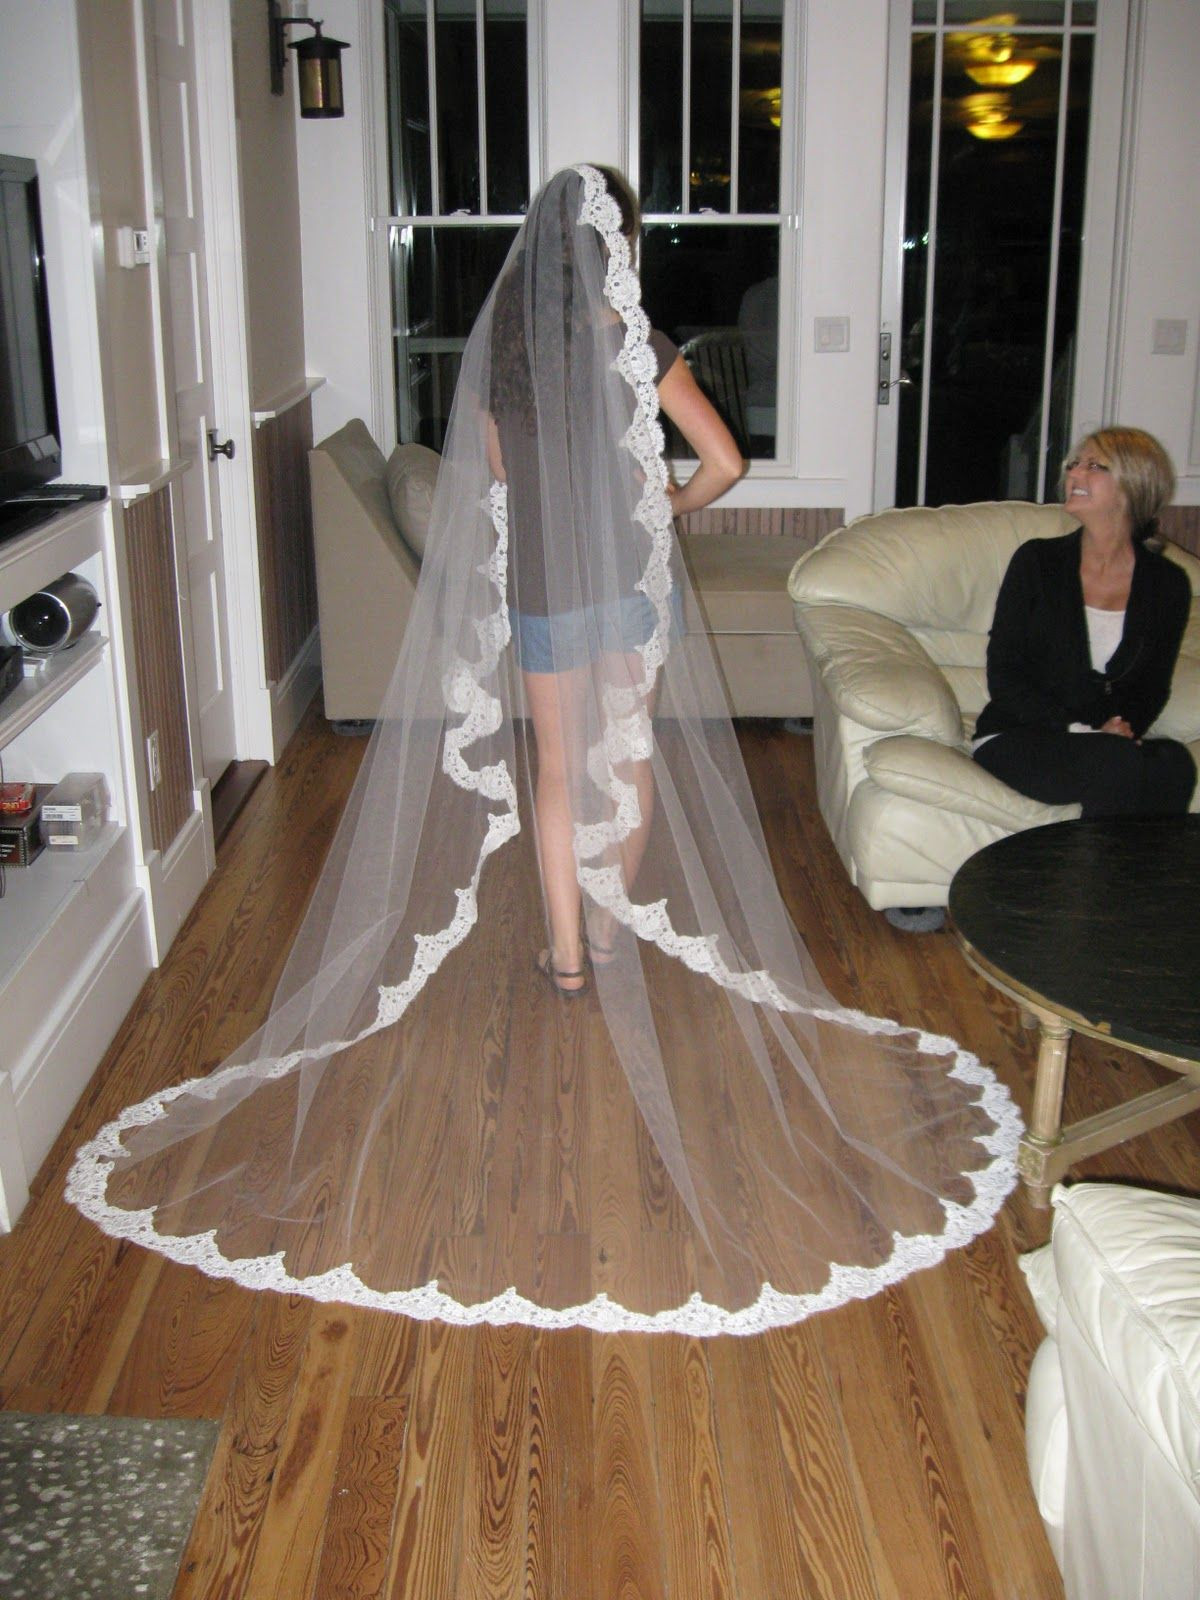 How Do You Make A Wedding Veil
 Pin on Wedding Ideas